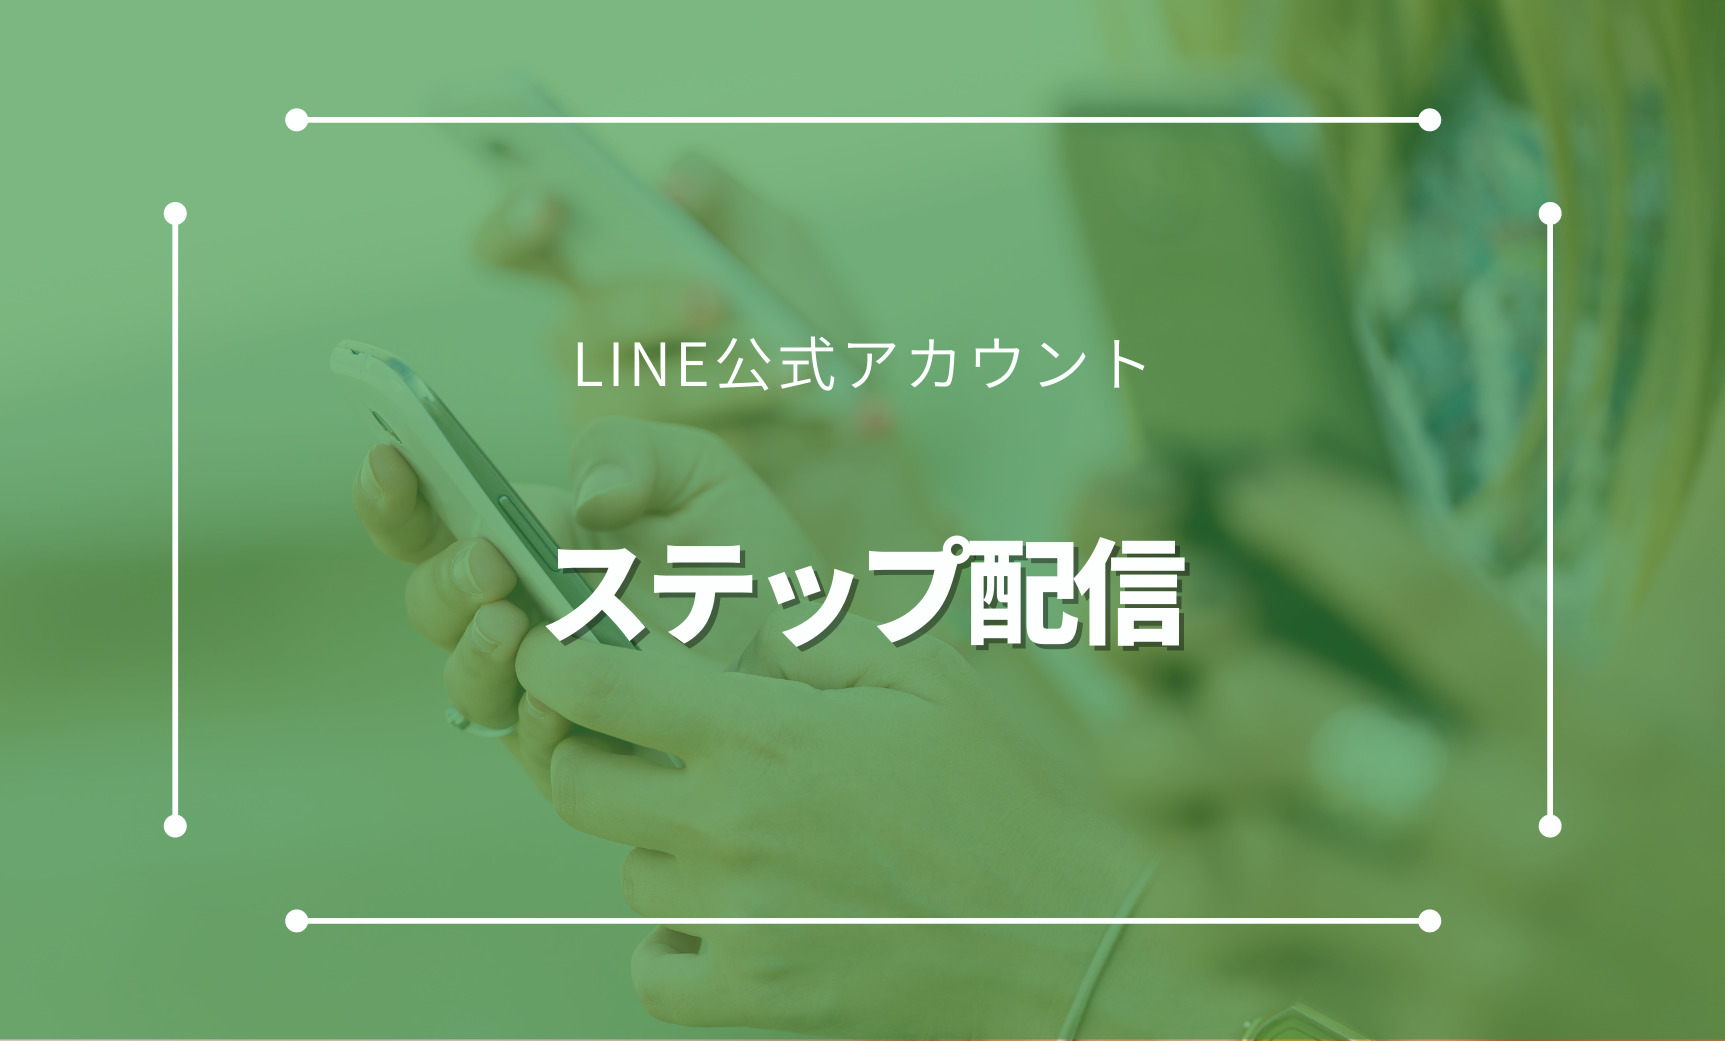 LINE公式アカウントのステップ配信とは。そのメリットや設定方法など。